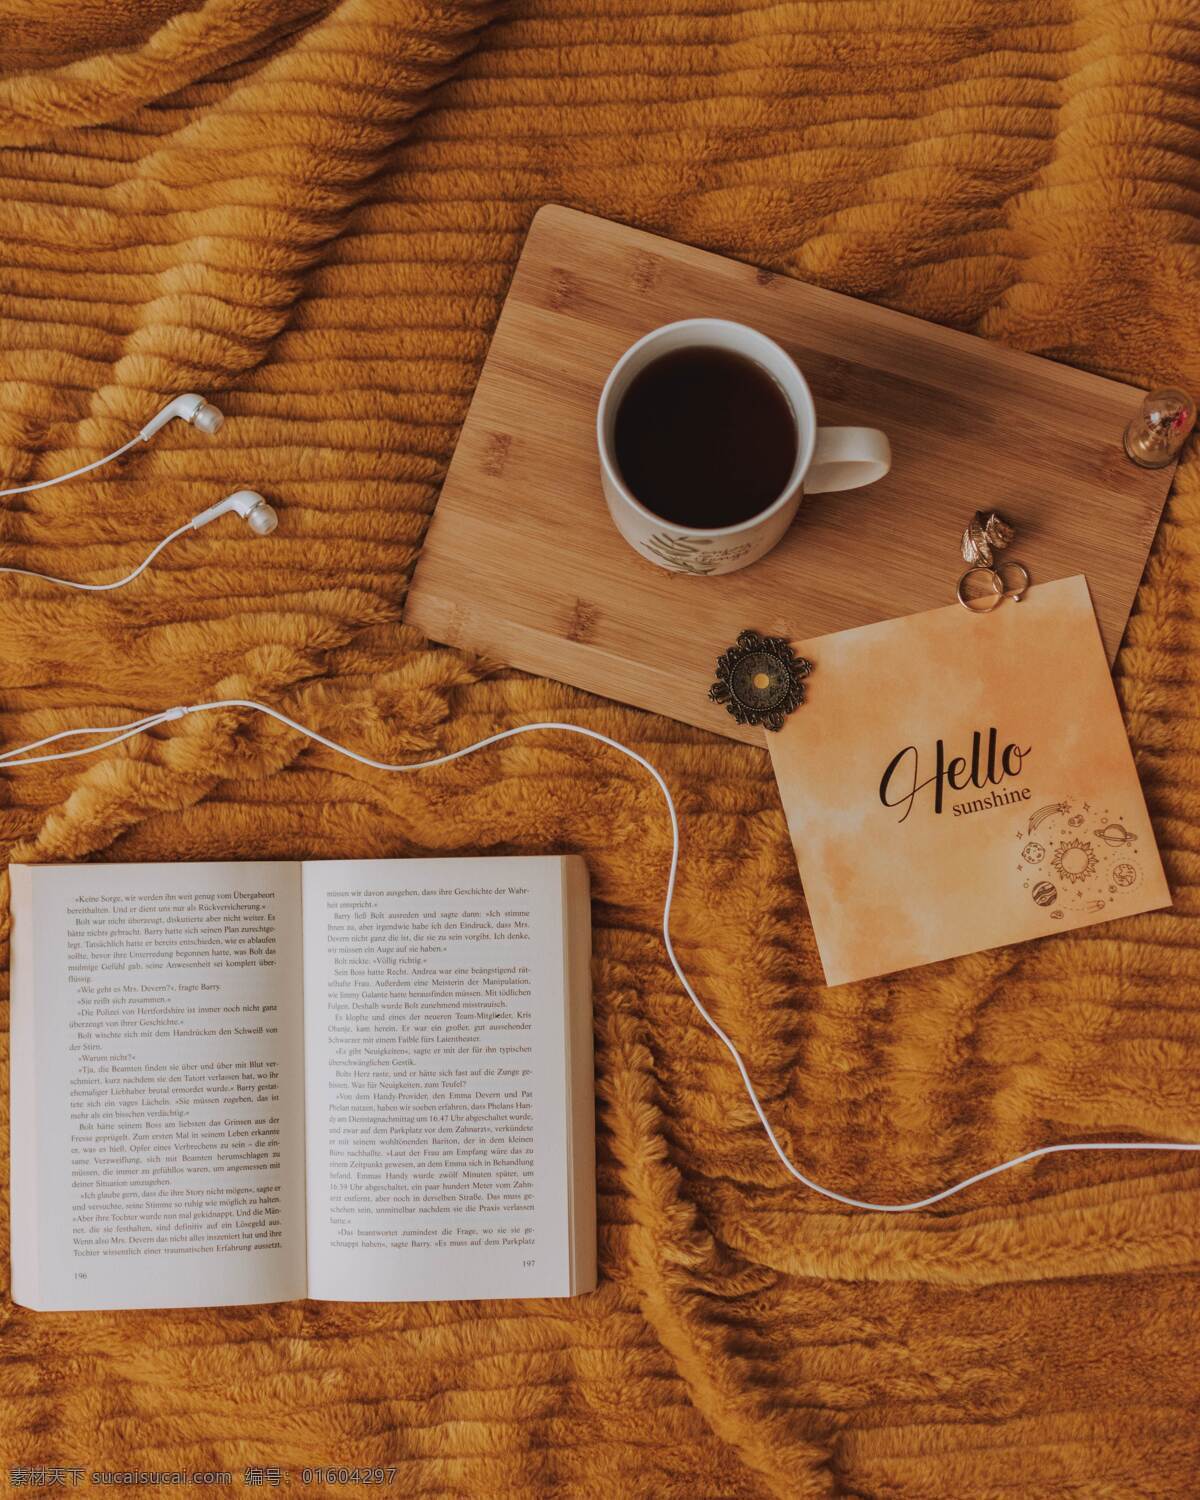 咖啡与书 杯子 书籍 木板 耳机 纸 生活百科 生活素材